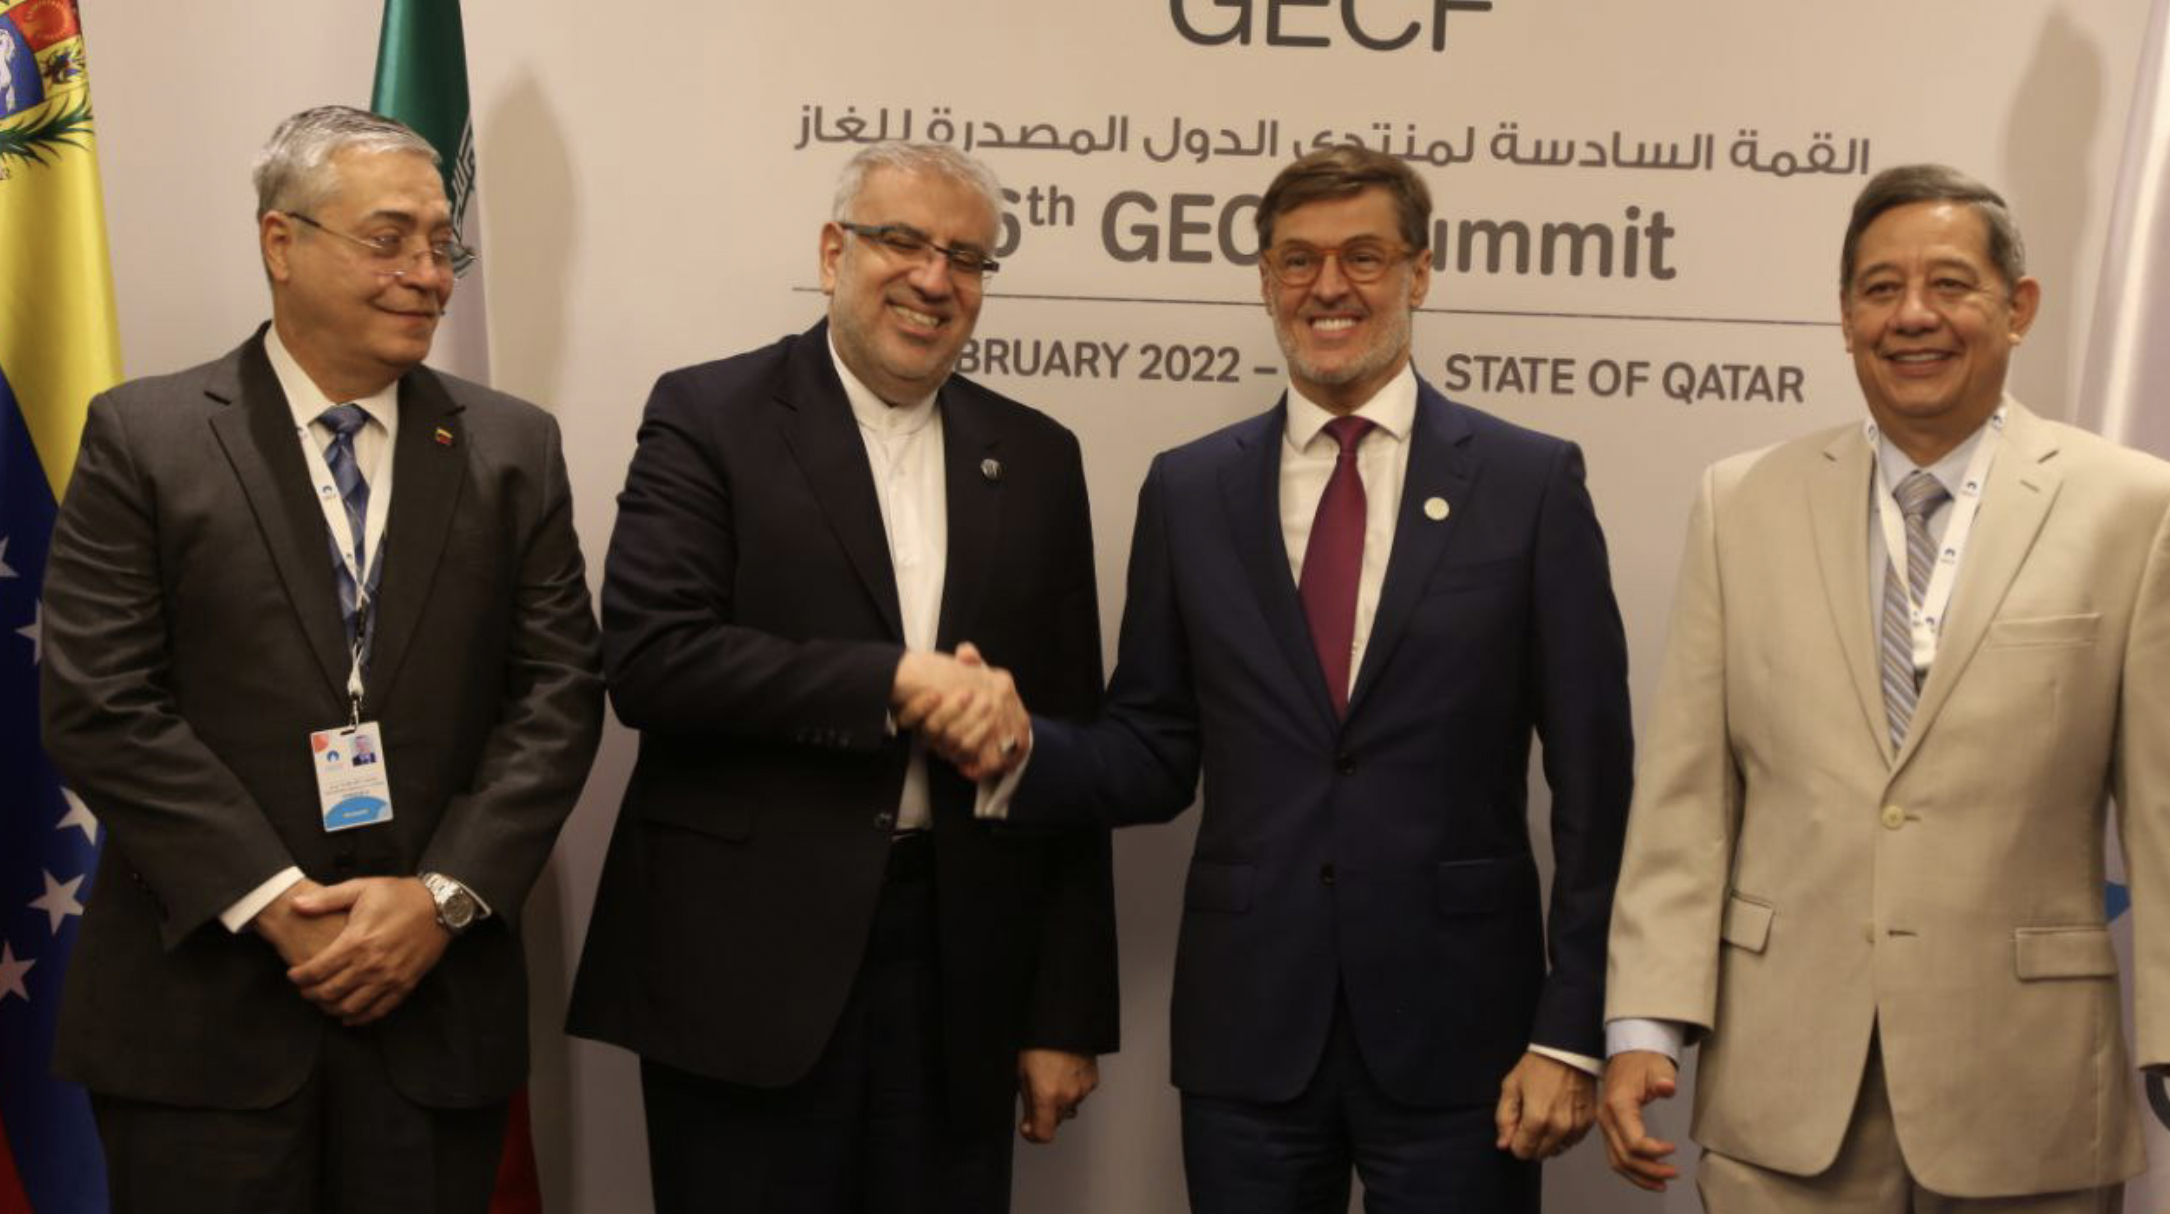 El ministro de Petróleo de la República Islámica de Irán, Javad Owji y el canciller venezolano, Félix Plasencia